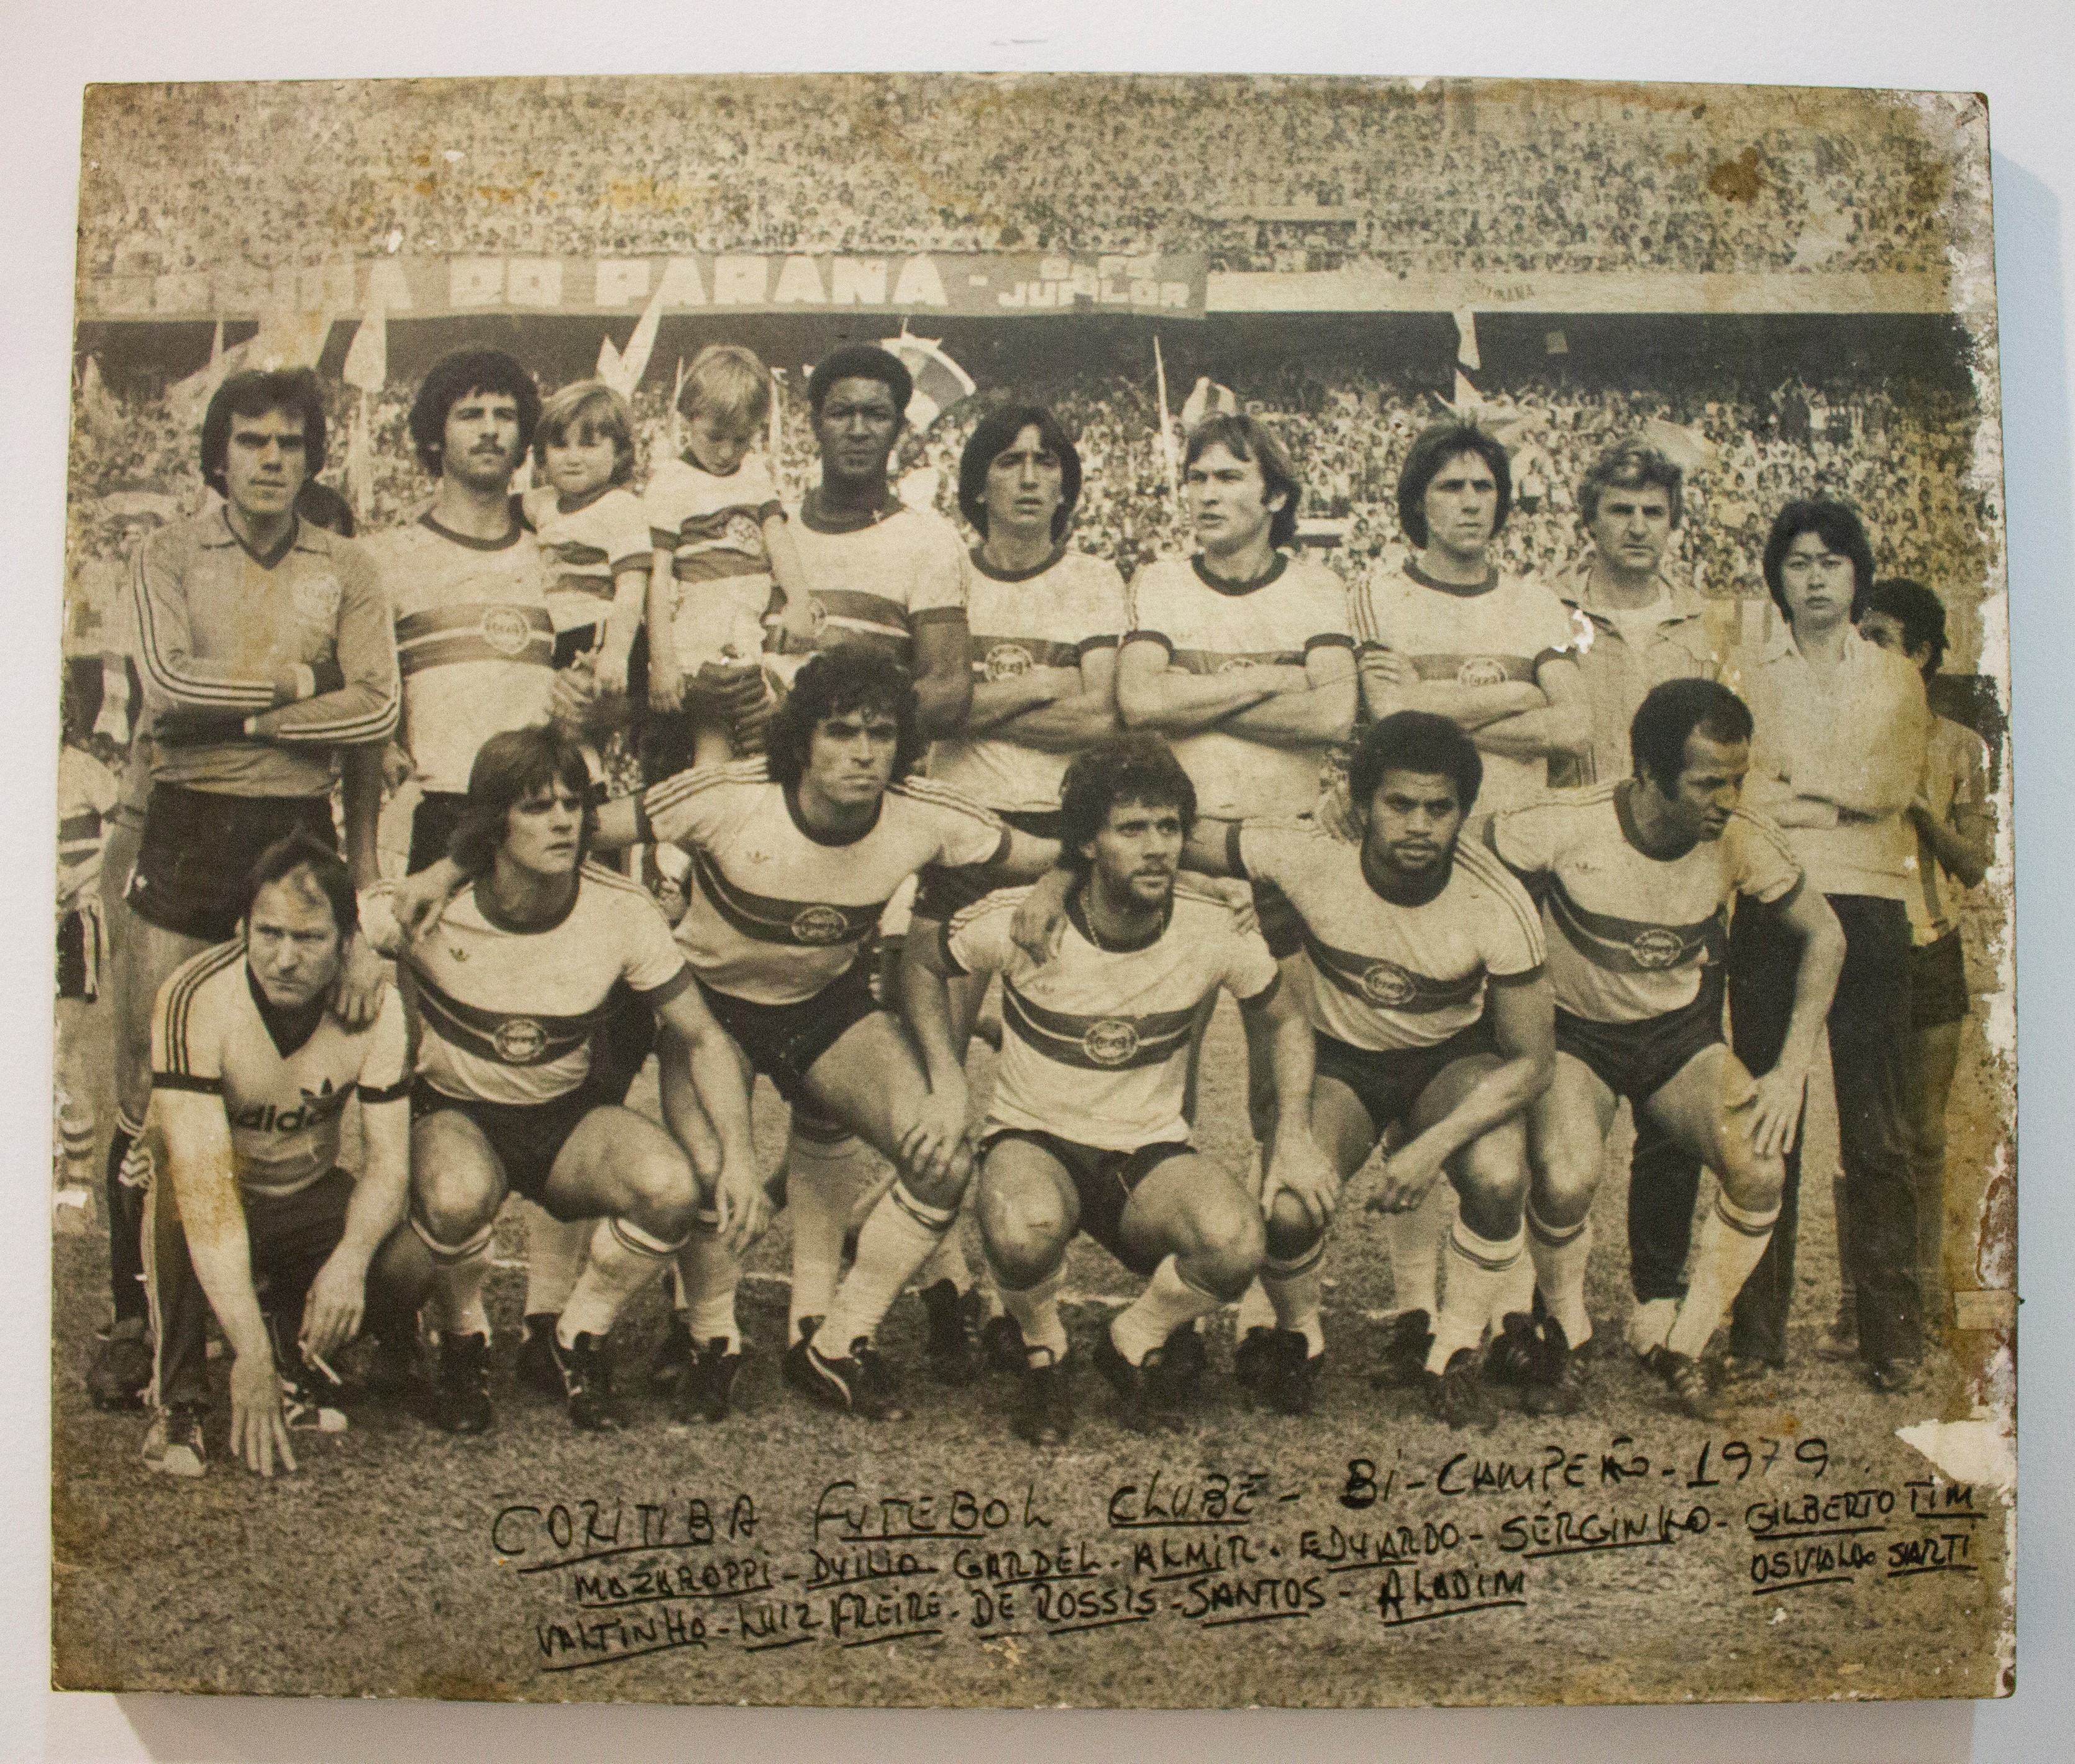 1979 - Coritiba bicampeão: Mazaroppi, Duilio, Gardel, Almir, Eduardo, Serginho, Gilberto Tim, Valtinho, Luiz Freire, De Rossis, Santos e Aladim.